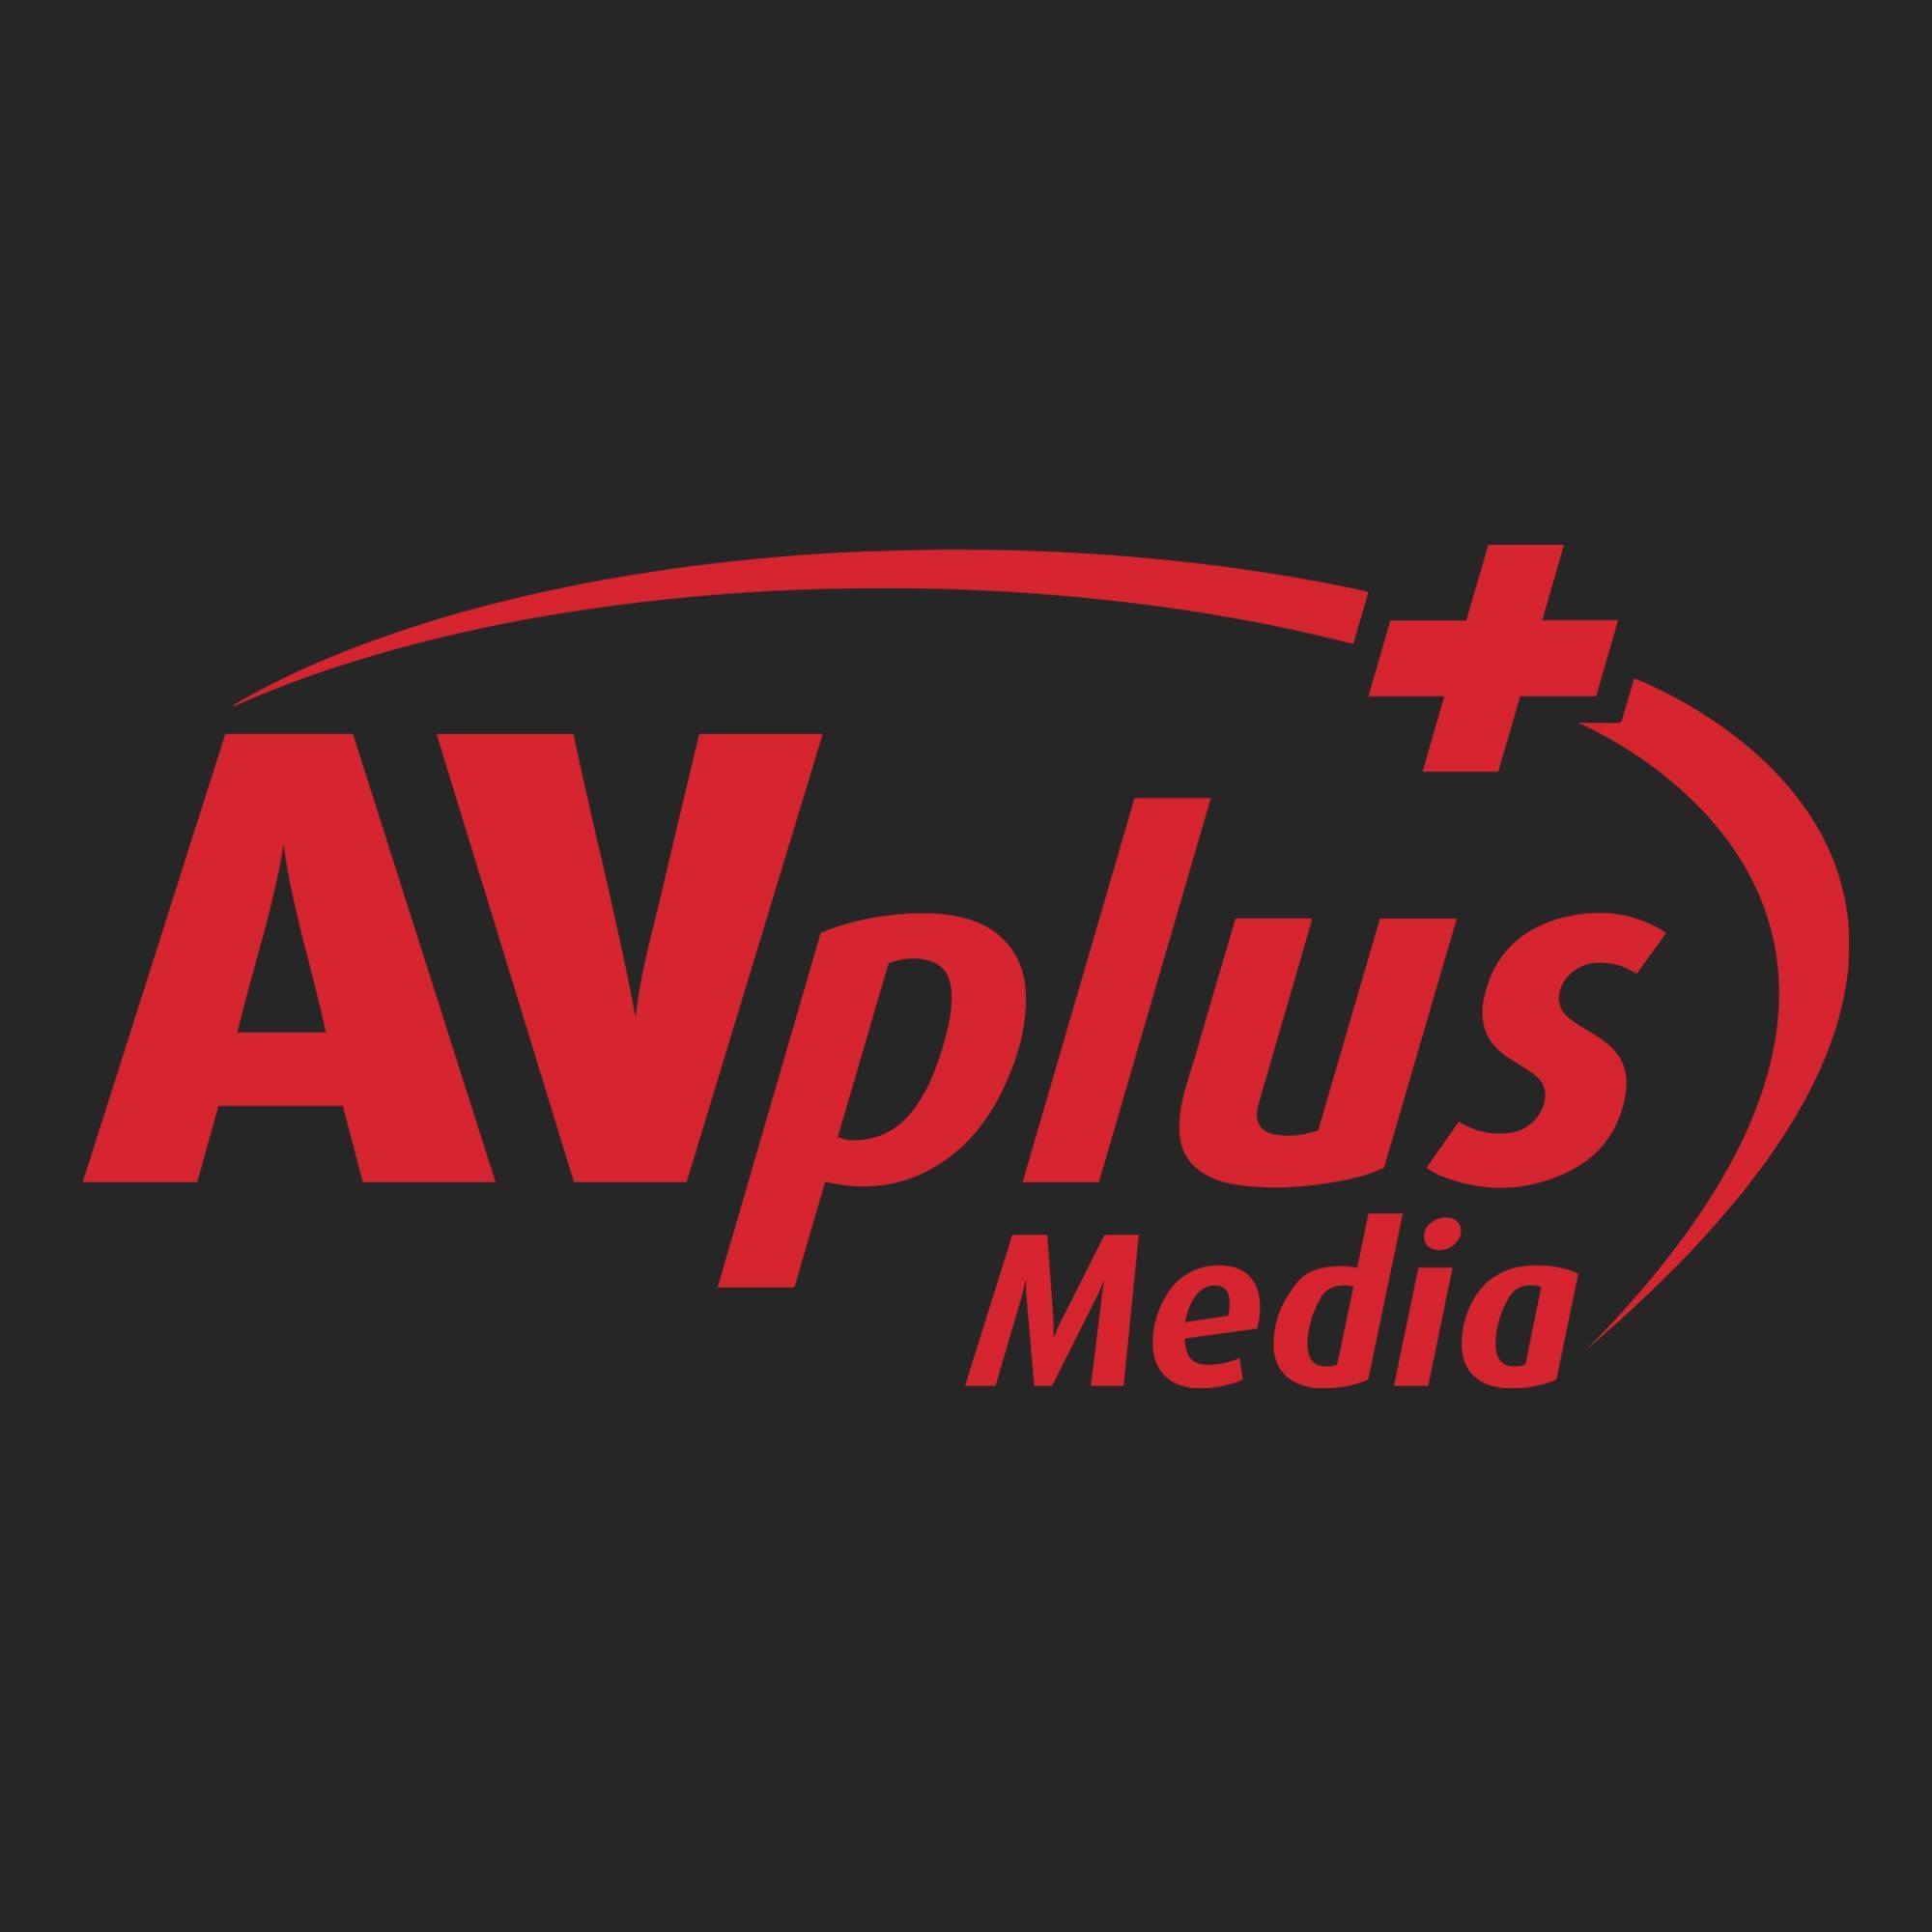 AV Plus media